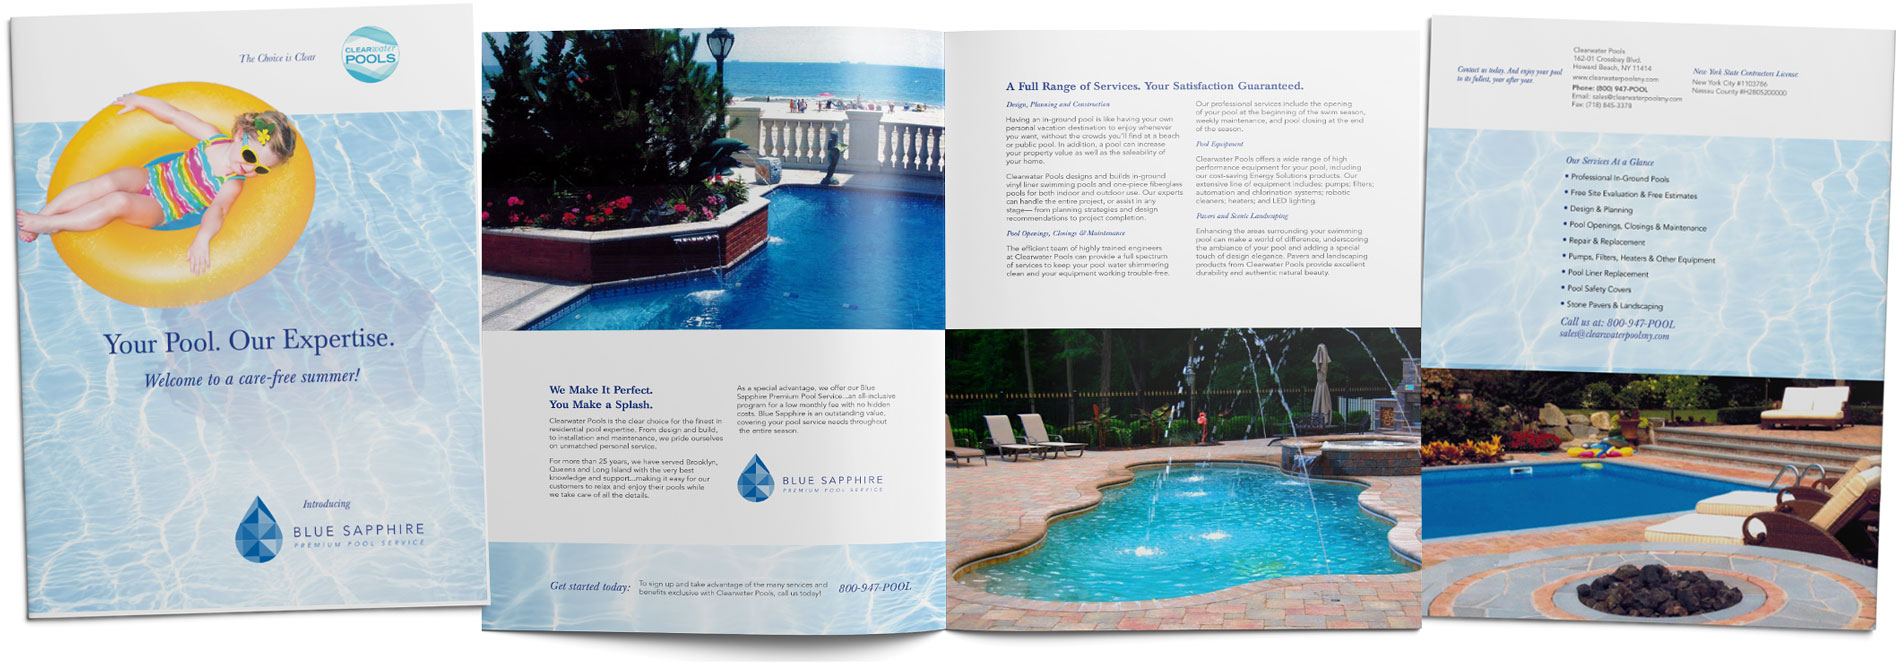 Clearwater Pools Sales brochure